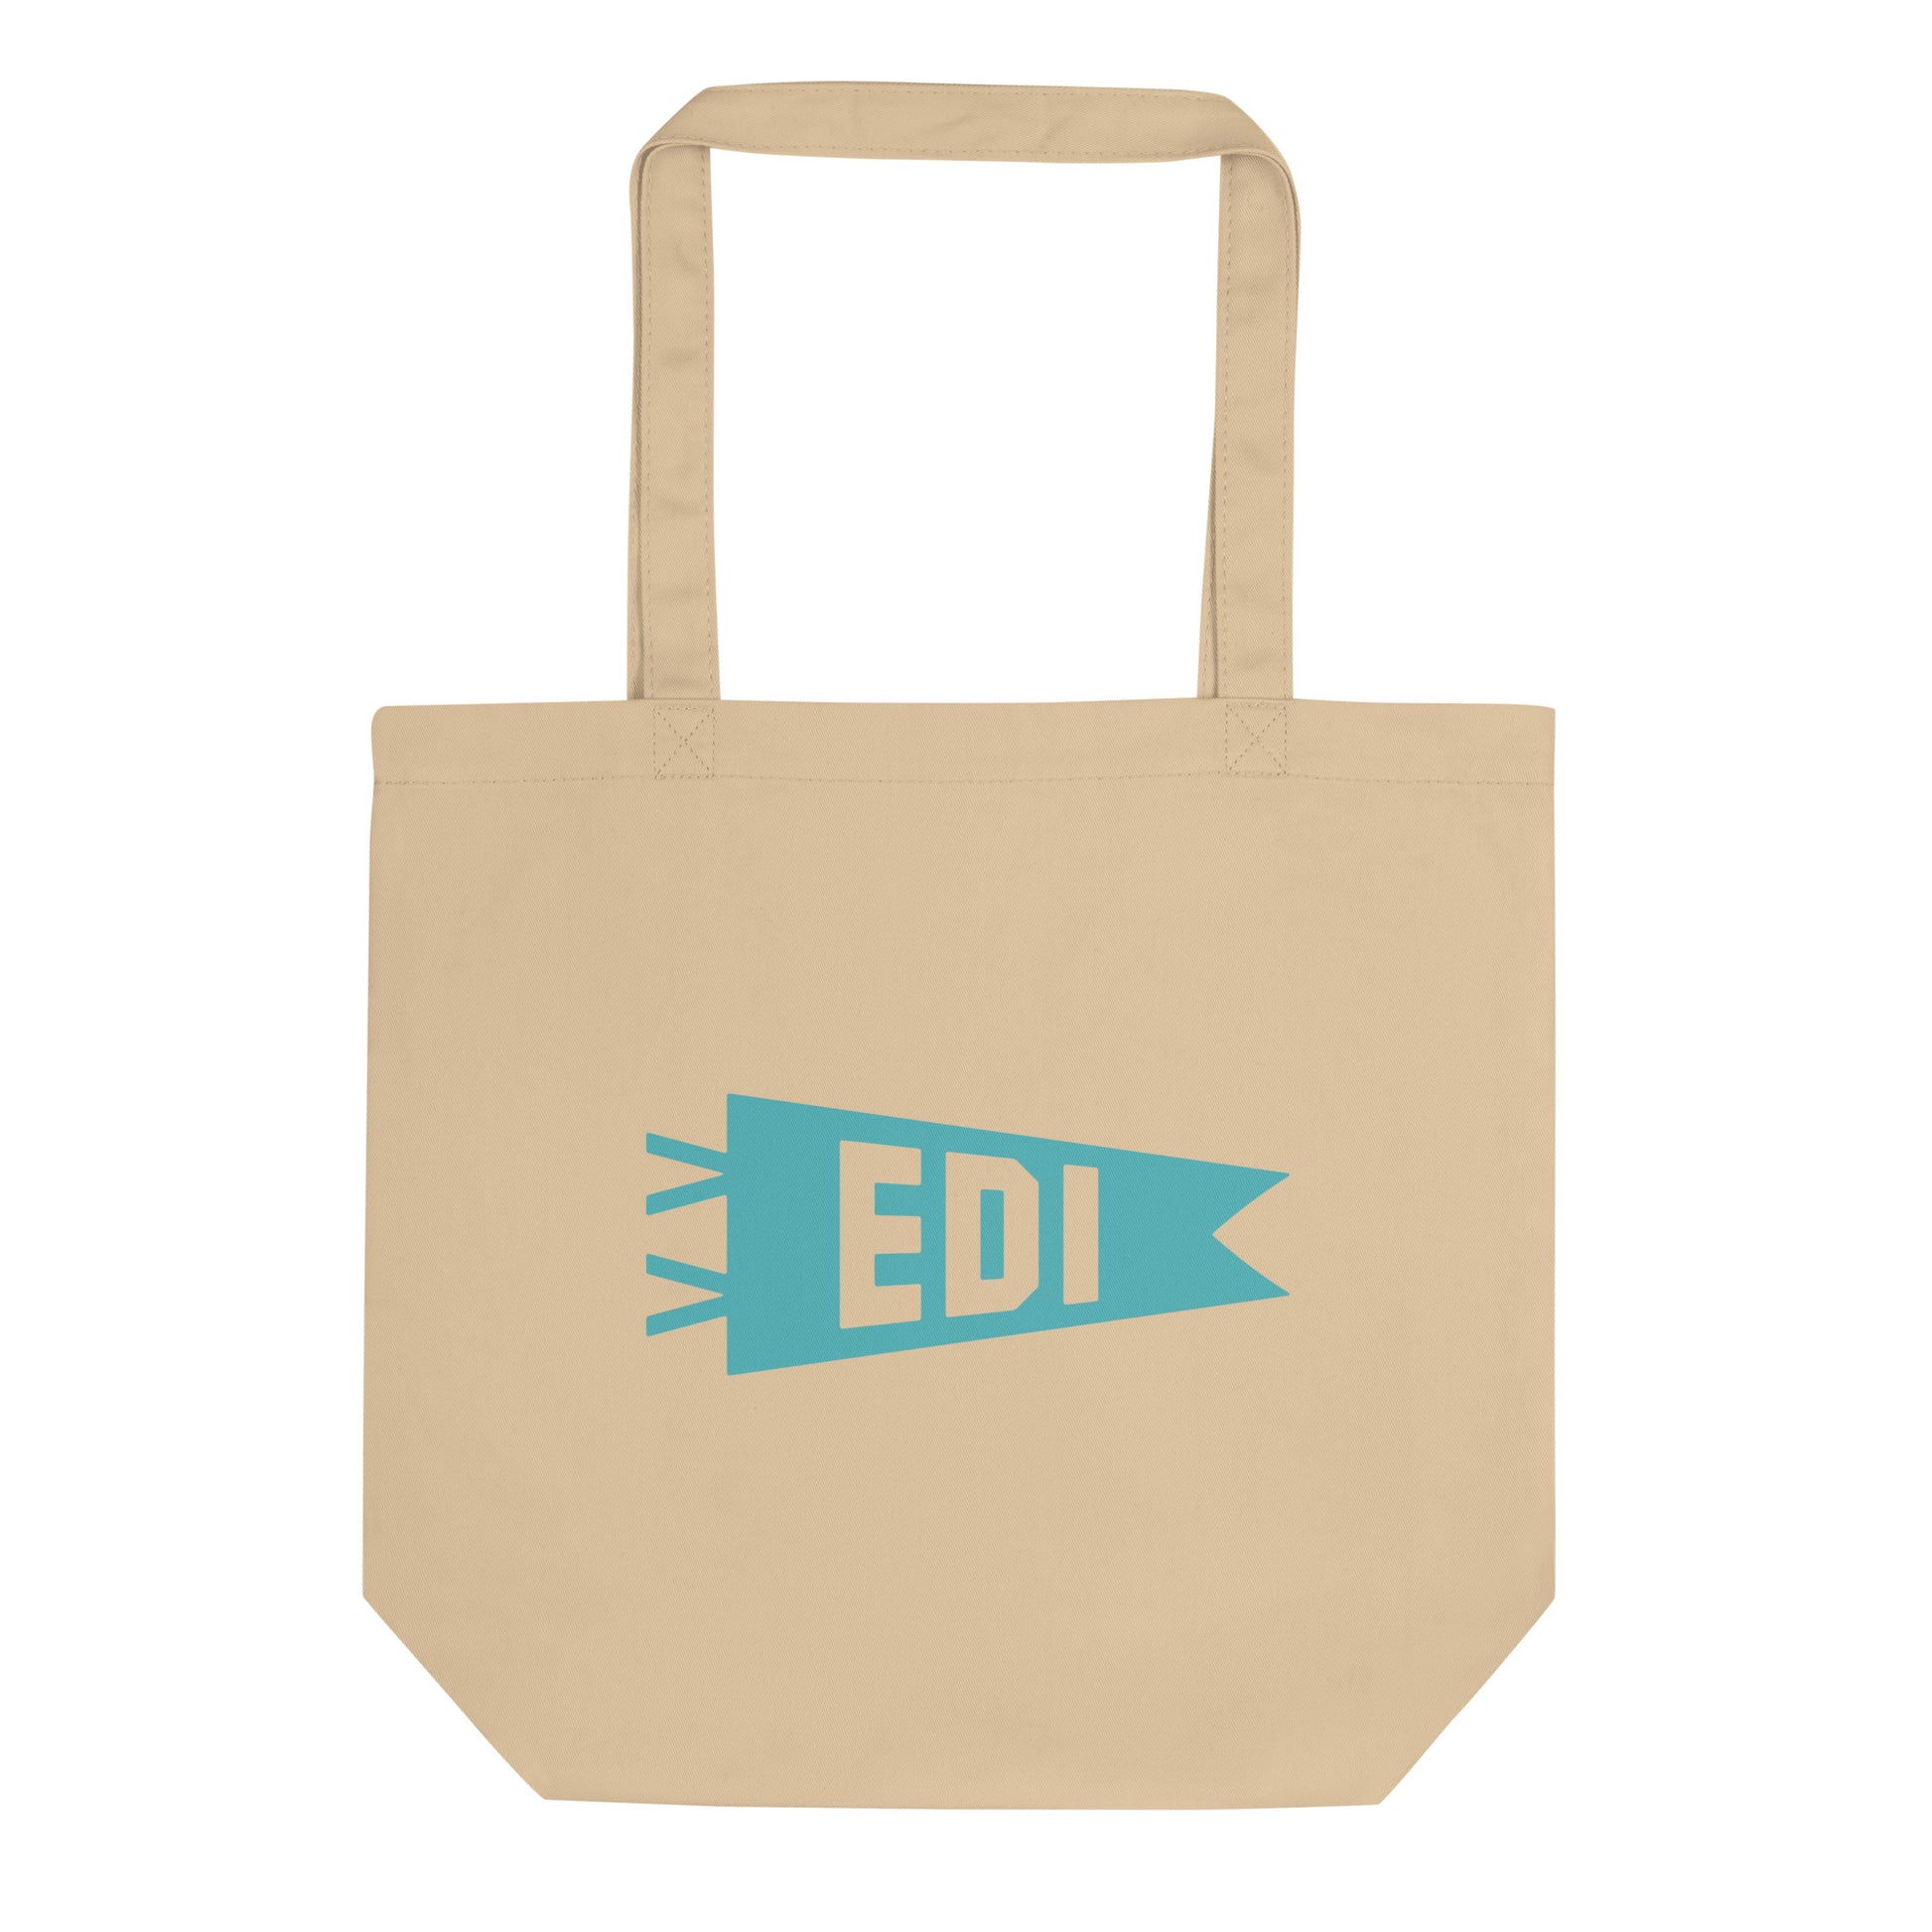 Cool Travel Gift Organic Tote Bag - Viking Blue • EDI Edinburgh • YHM Designs - Image 01